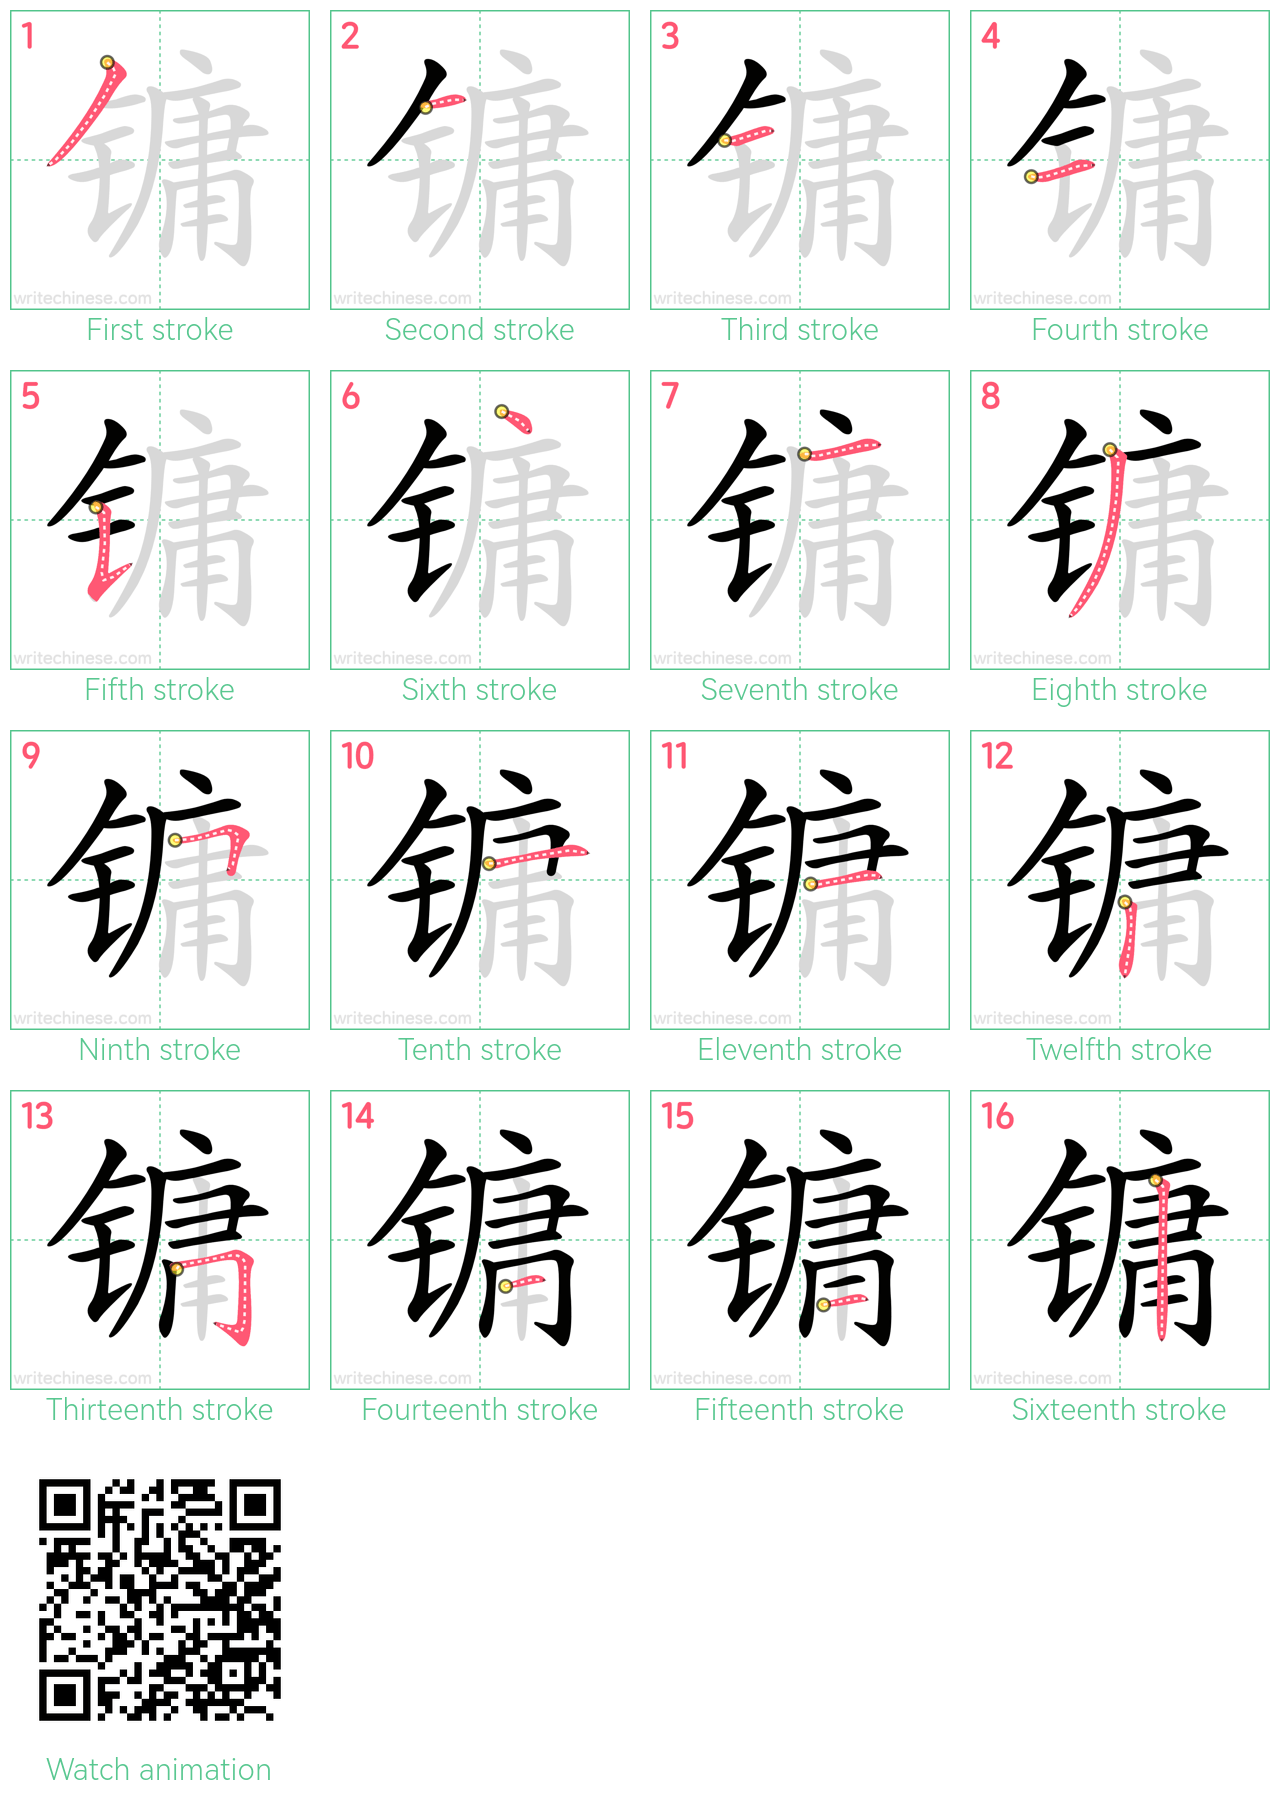 镛 step-by-step stroke order diagrams